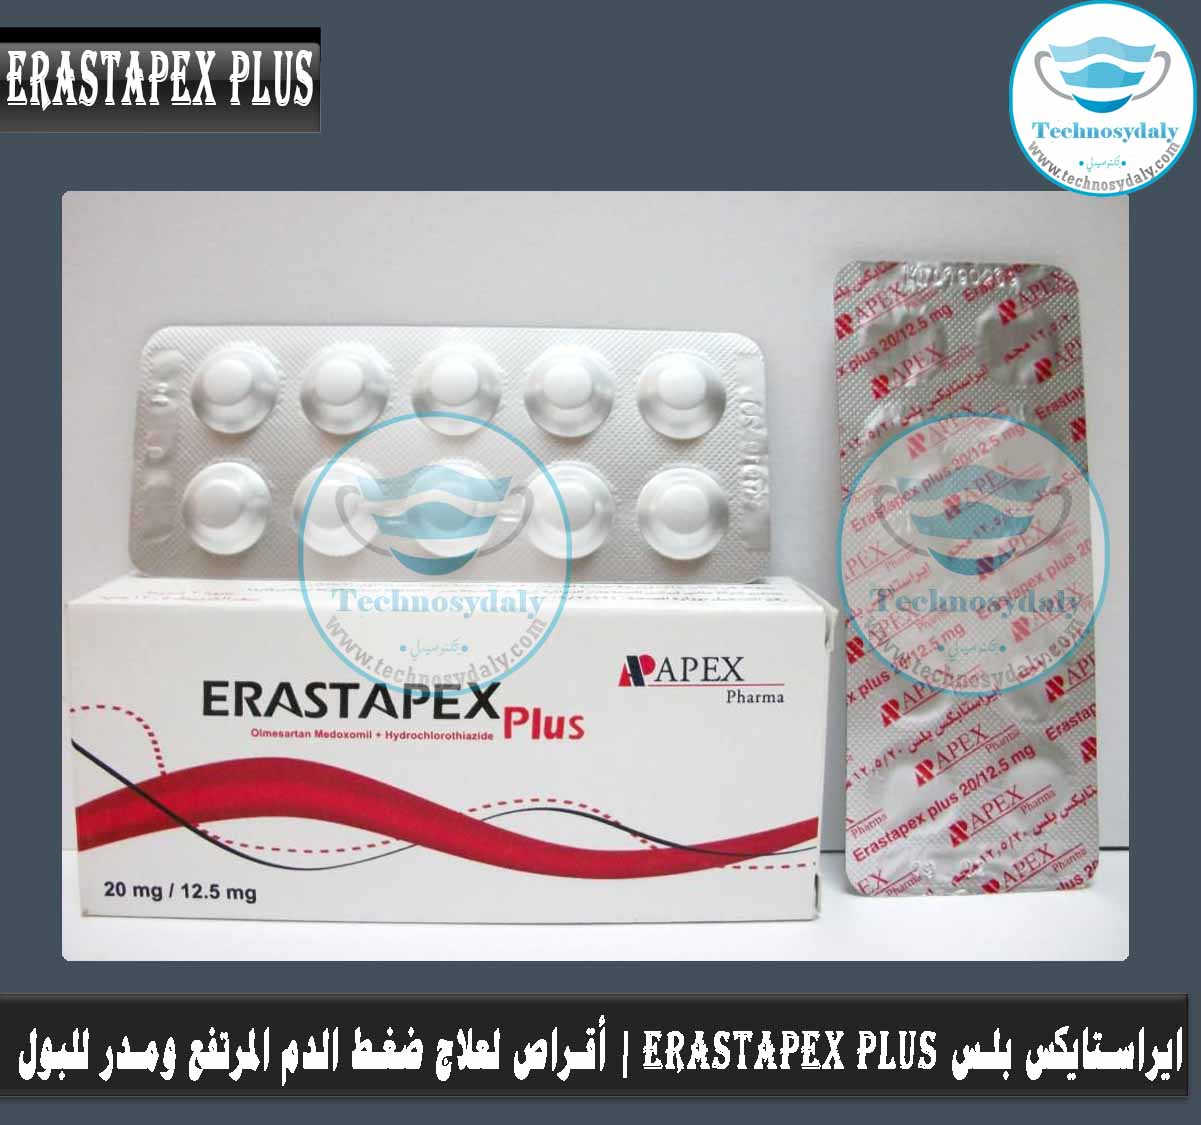 ايراستایکس بلس Erastapex plus20-12.5mg أقراص لعلاج ضغط الدم المرتفع ومدر للبول